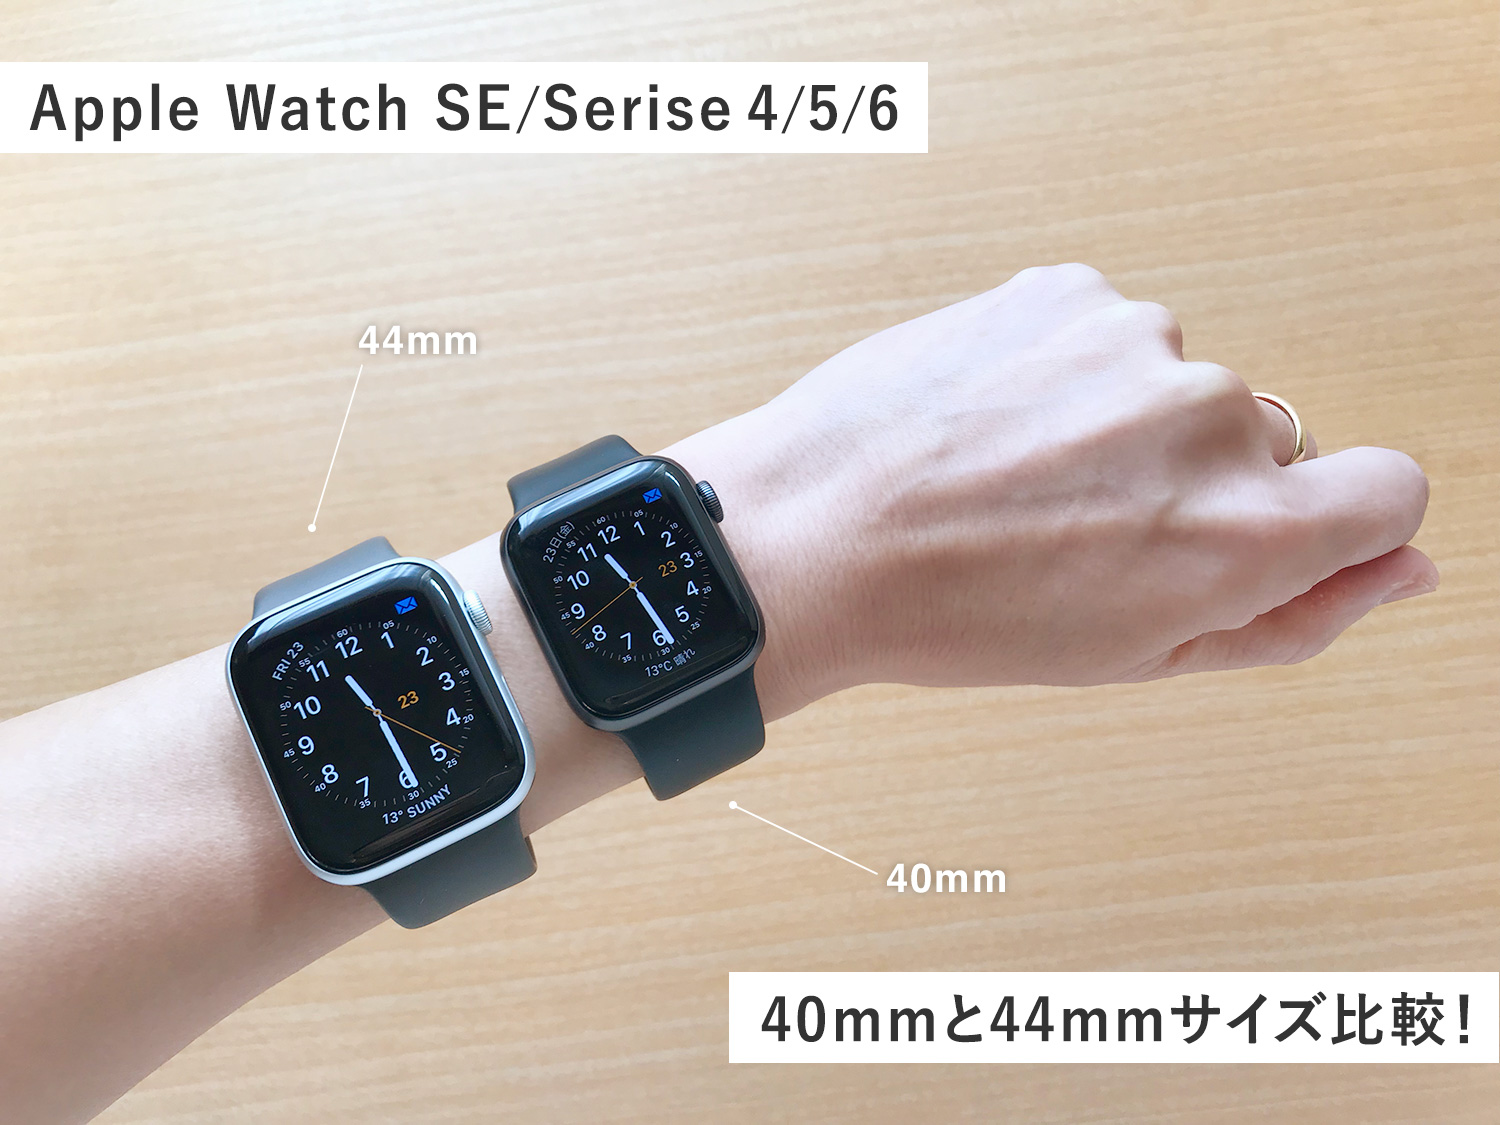 【Apple Watch】40mmと44mmサイズ比較！女性はどちらが使いやすい？両方着けてみた感想(SE,Series 4/5/6)